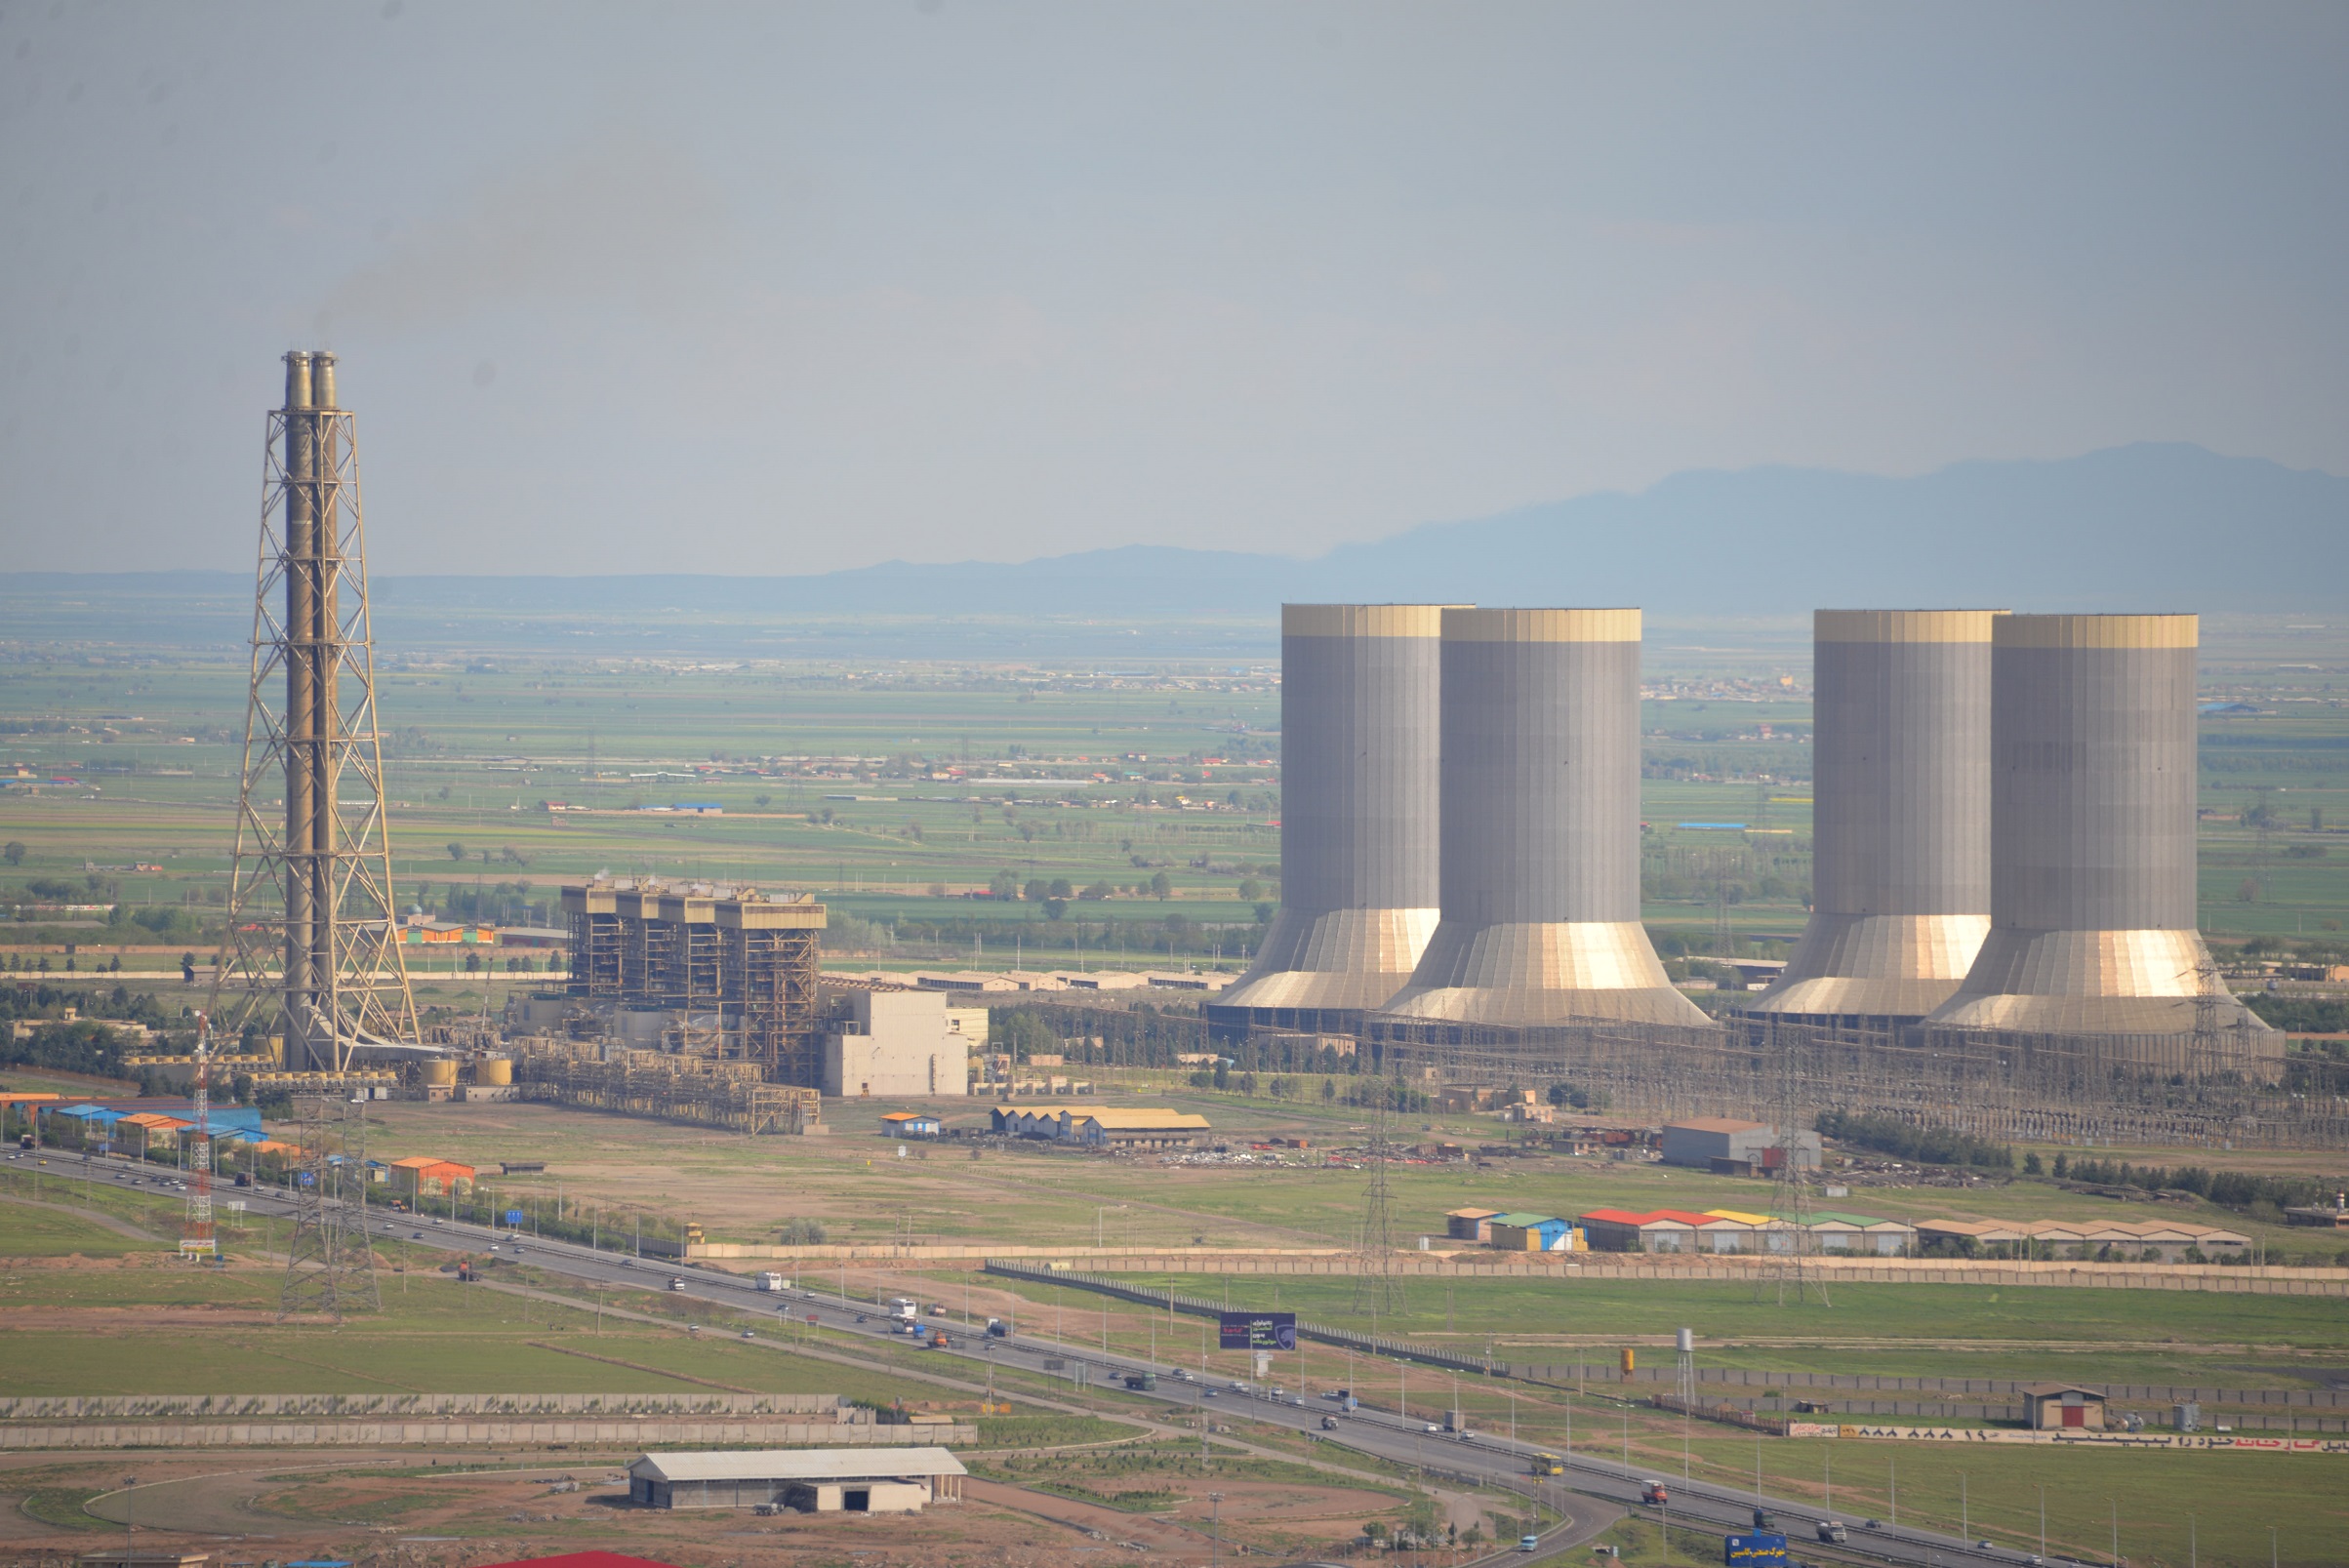 با اتمام تعمیرات واحد شماره ۲ بخاری نیروگاه شهید رجایی بازگشت دوباره ۲۵۰ مگاوات به ظرفیت تولید برق کشور محقق شد